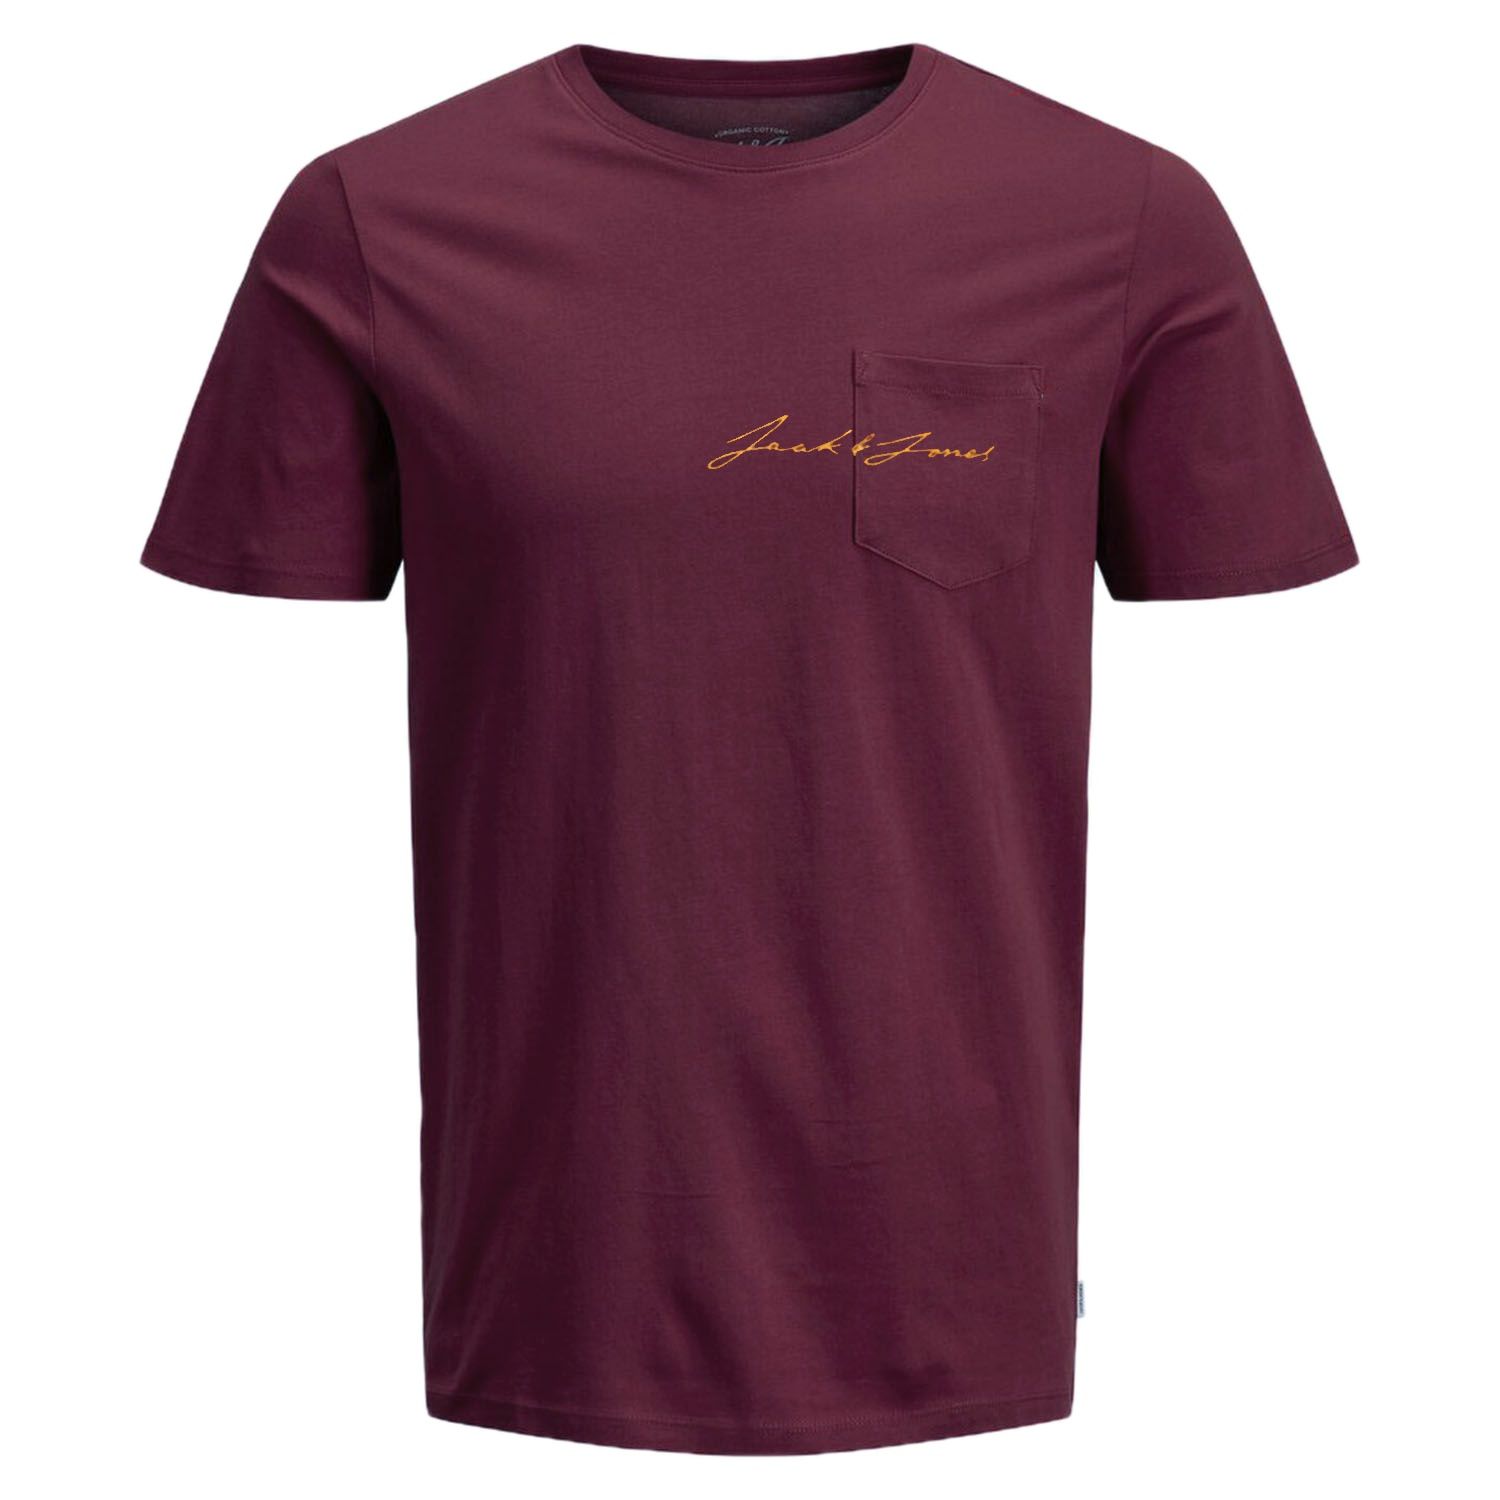 تی شرت آستین کوتاه مردانه جک اند جونز مدل ساده جیب دار کد Olympus12180662 -  - 1